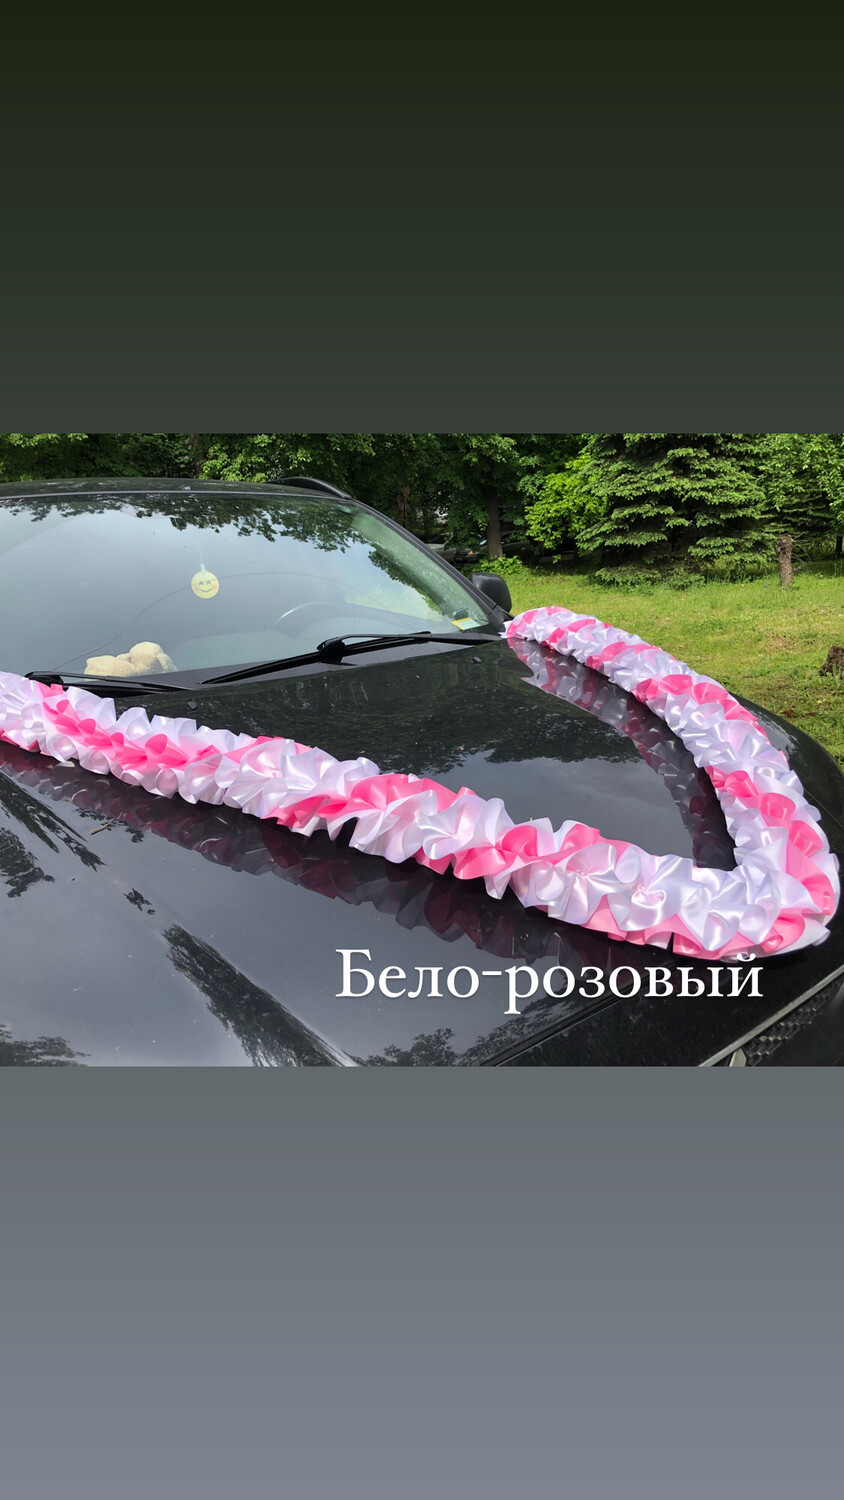 Лента для авто "Рюшь объемная", атлас,бело-розовый